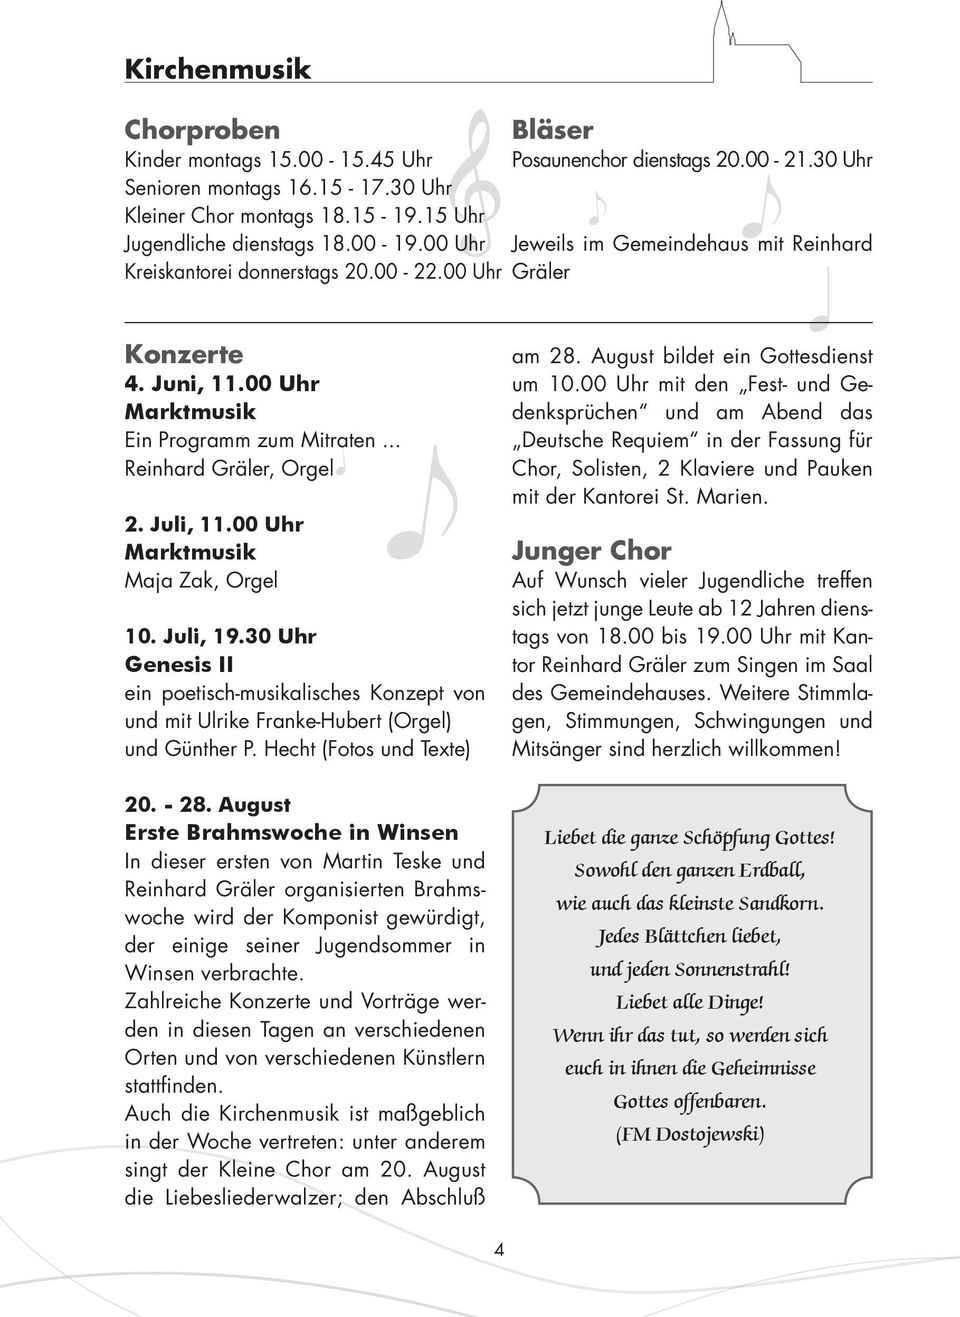 00 Uhr Marktmusik Maja Zak, Orgel 10. Juli, 19.30 Uhr Genesis II ein poetisch-musikalisches Konzept von und mit Ulrike Franke-Hubert (Orgel) und Günther P. Hecht (Fotos und Texte) 20. - 28.